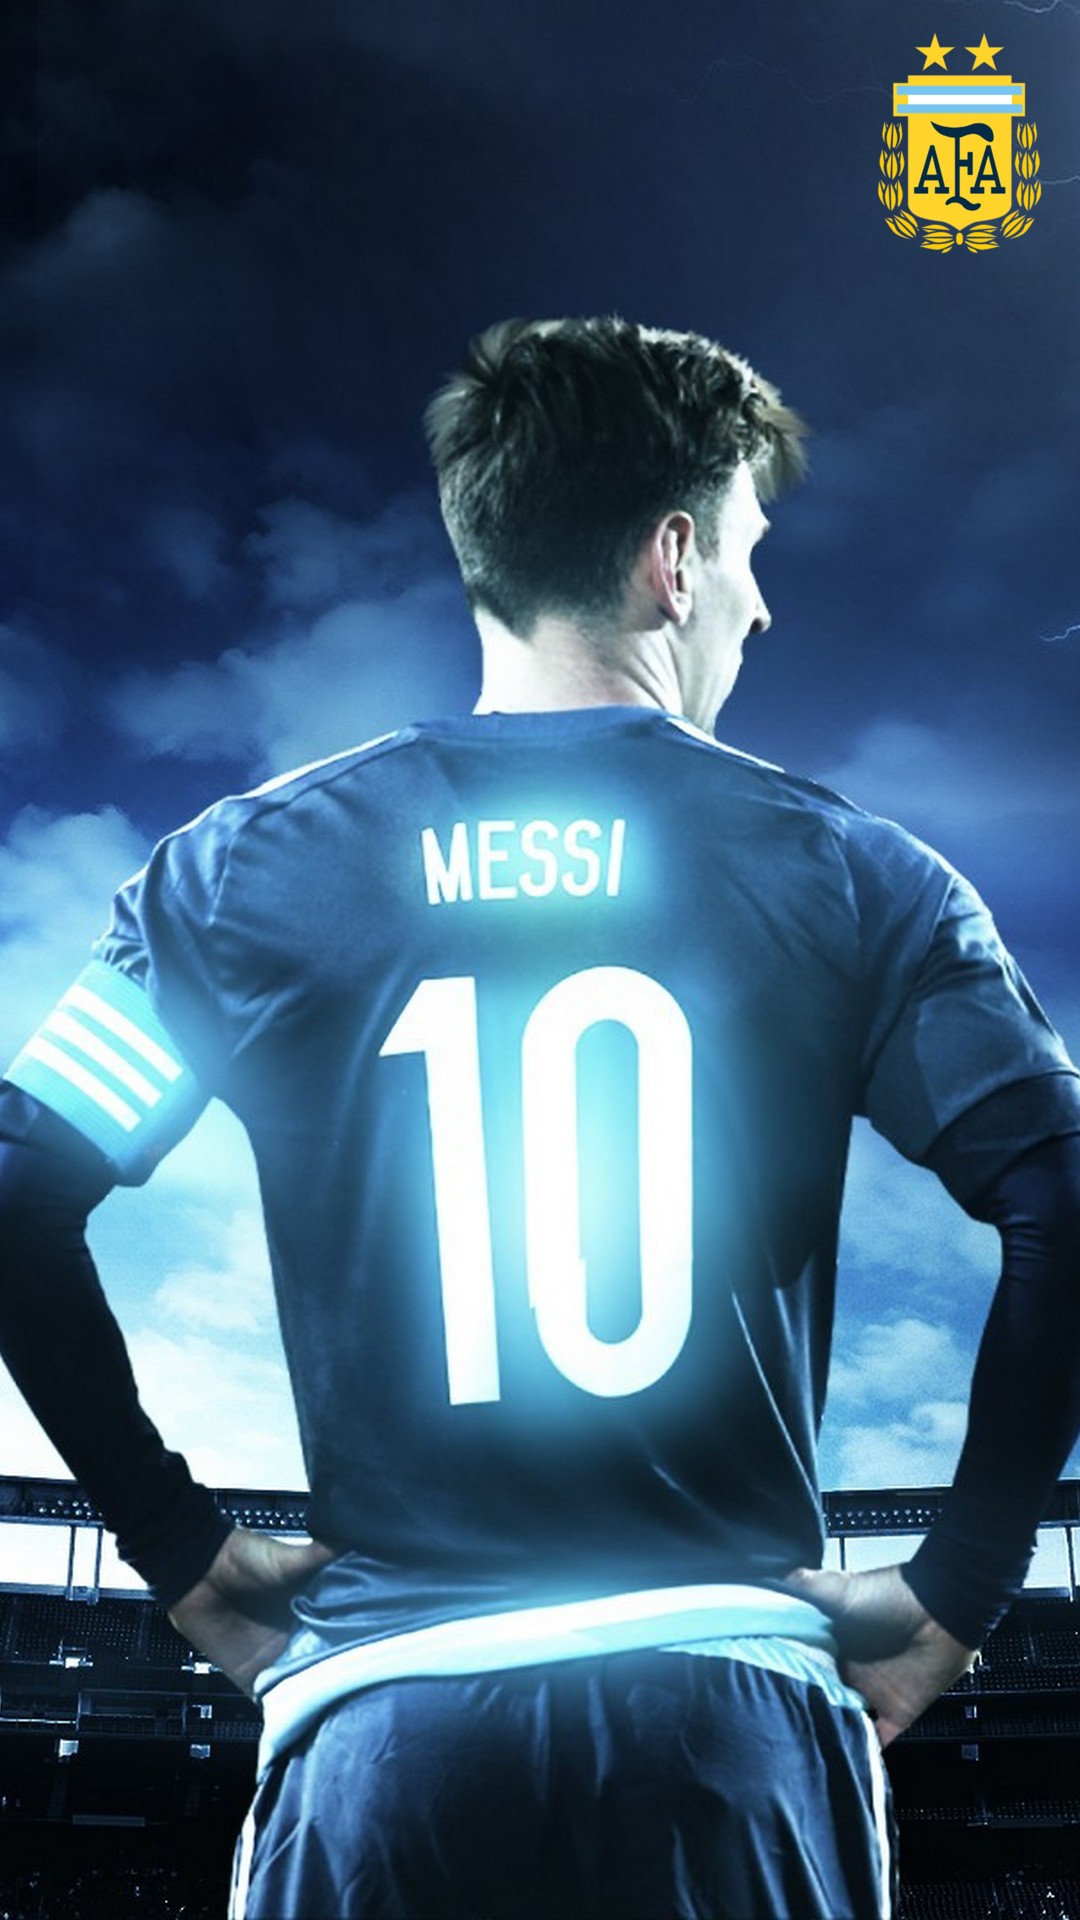 Mời bạn cùng khám phá bức hình nền Messi Argentina trên iPhone độc đáo, tô điểm cho chiếc điện thoại của bạn thêm phần nổi bật với hình ảnh ngôi sao bóng đá này. Hãy cùng thưởng thức những trải nghiệm thú vị và cùng hâm nóng cảm hứng yêu thể thao nhé!